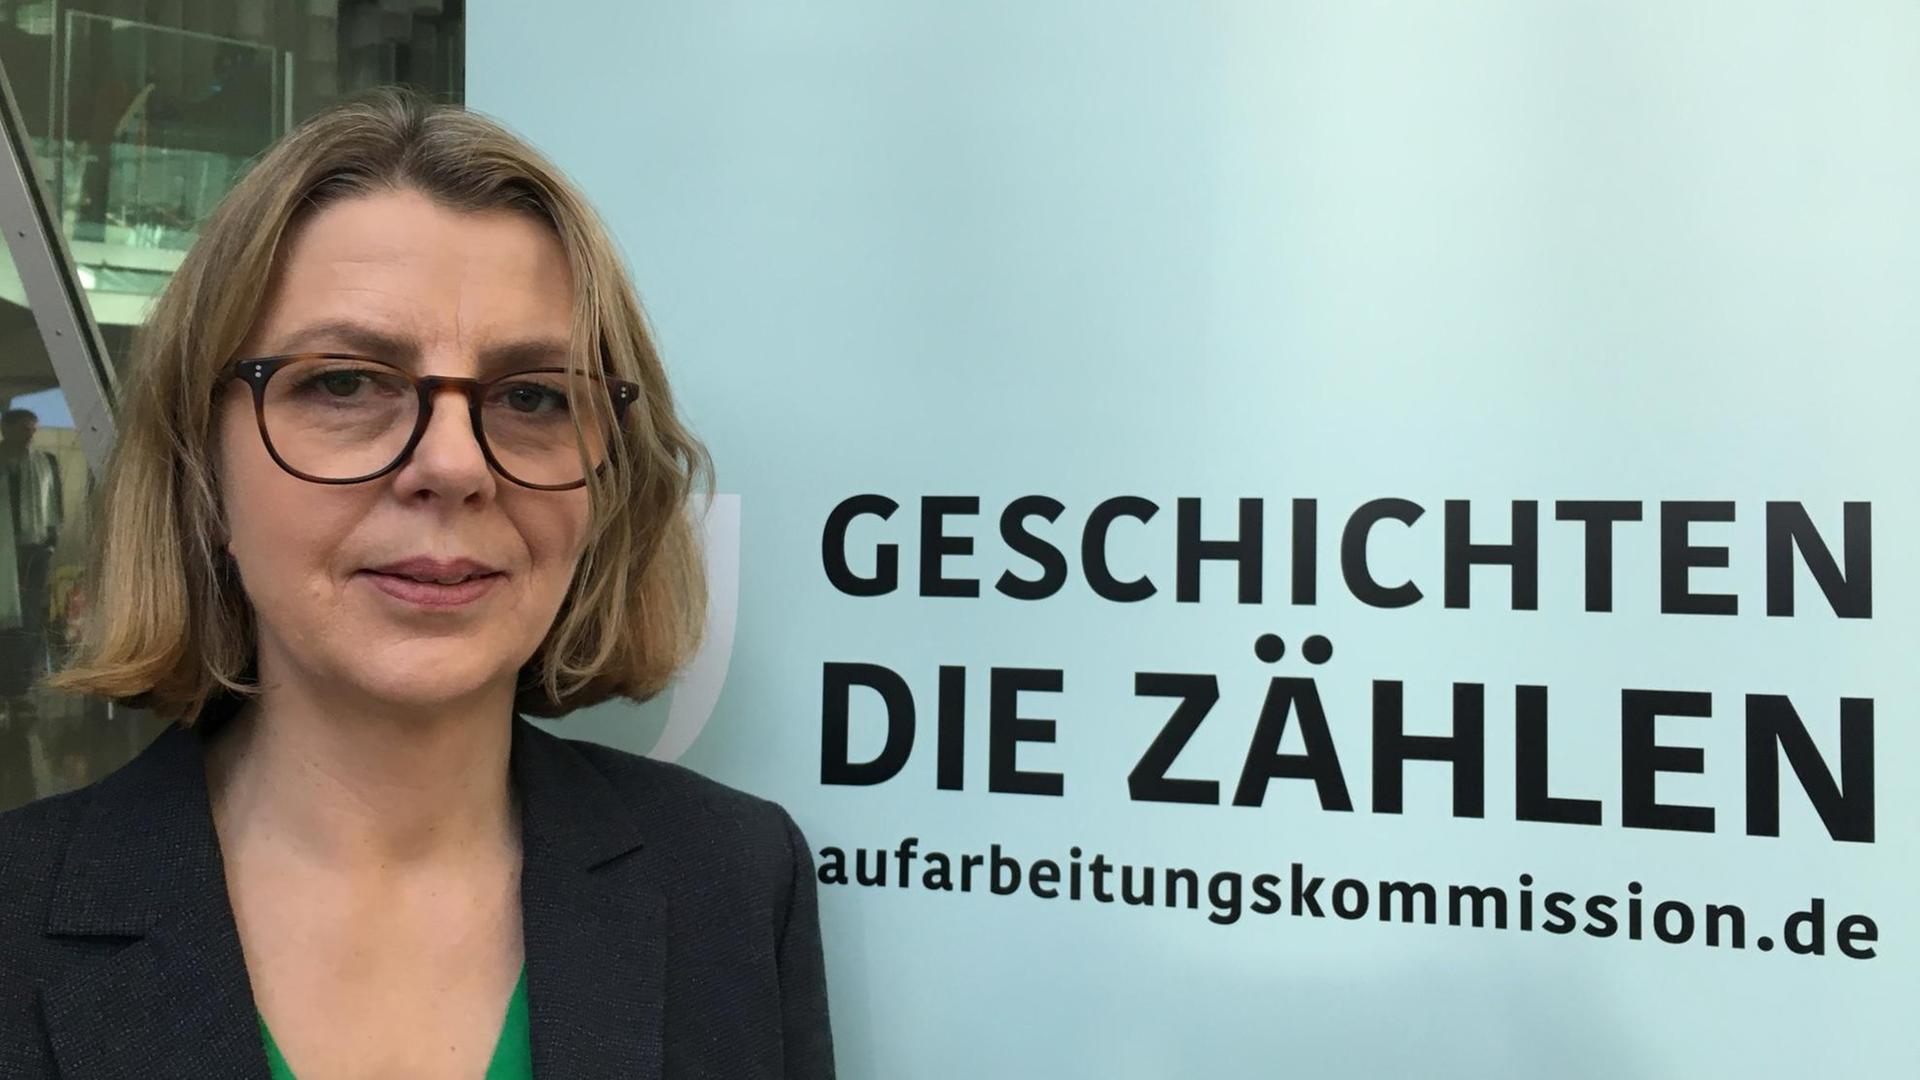 Sabine Andresen, Vorsitzende der Aufarbeitungskommission der Bundesregierung, bei der Tagung in Berlin